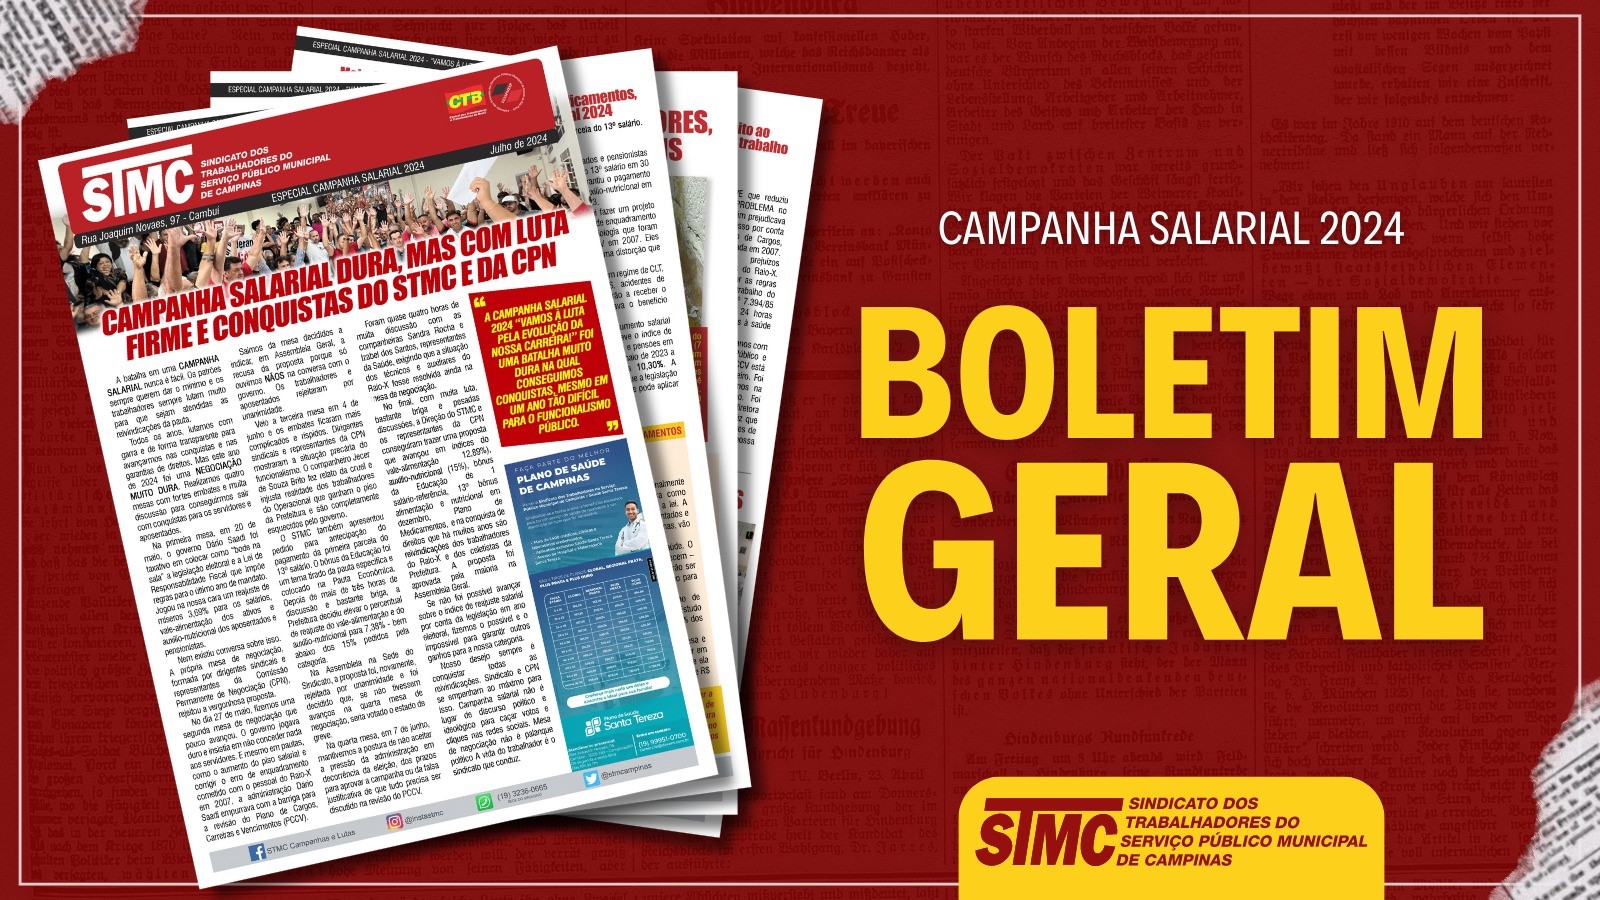 Boletim mostra as conquistas e a luta da Campanha Salarial 2024.